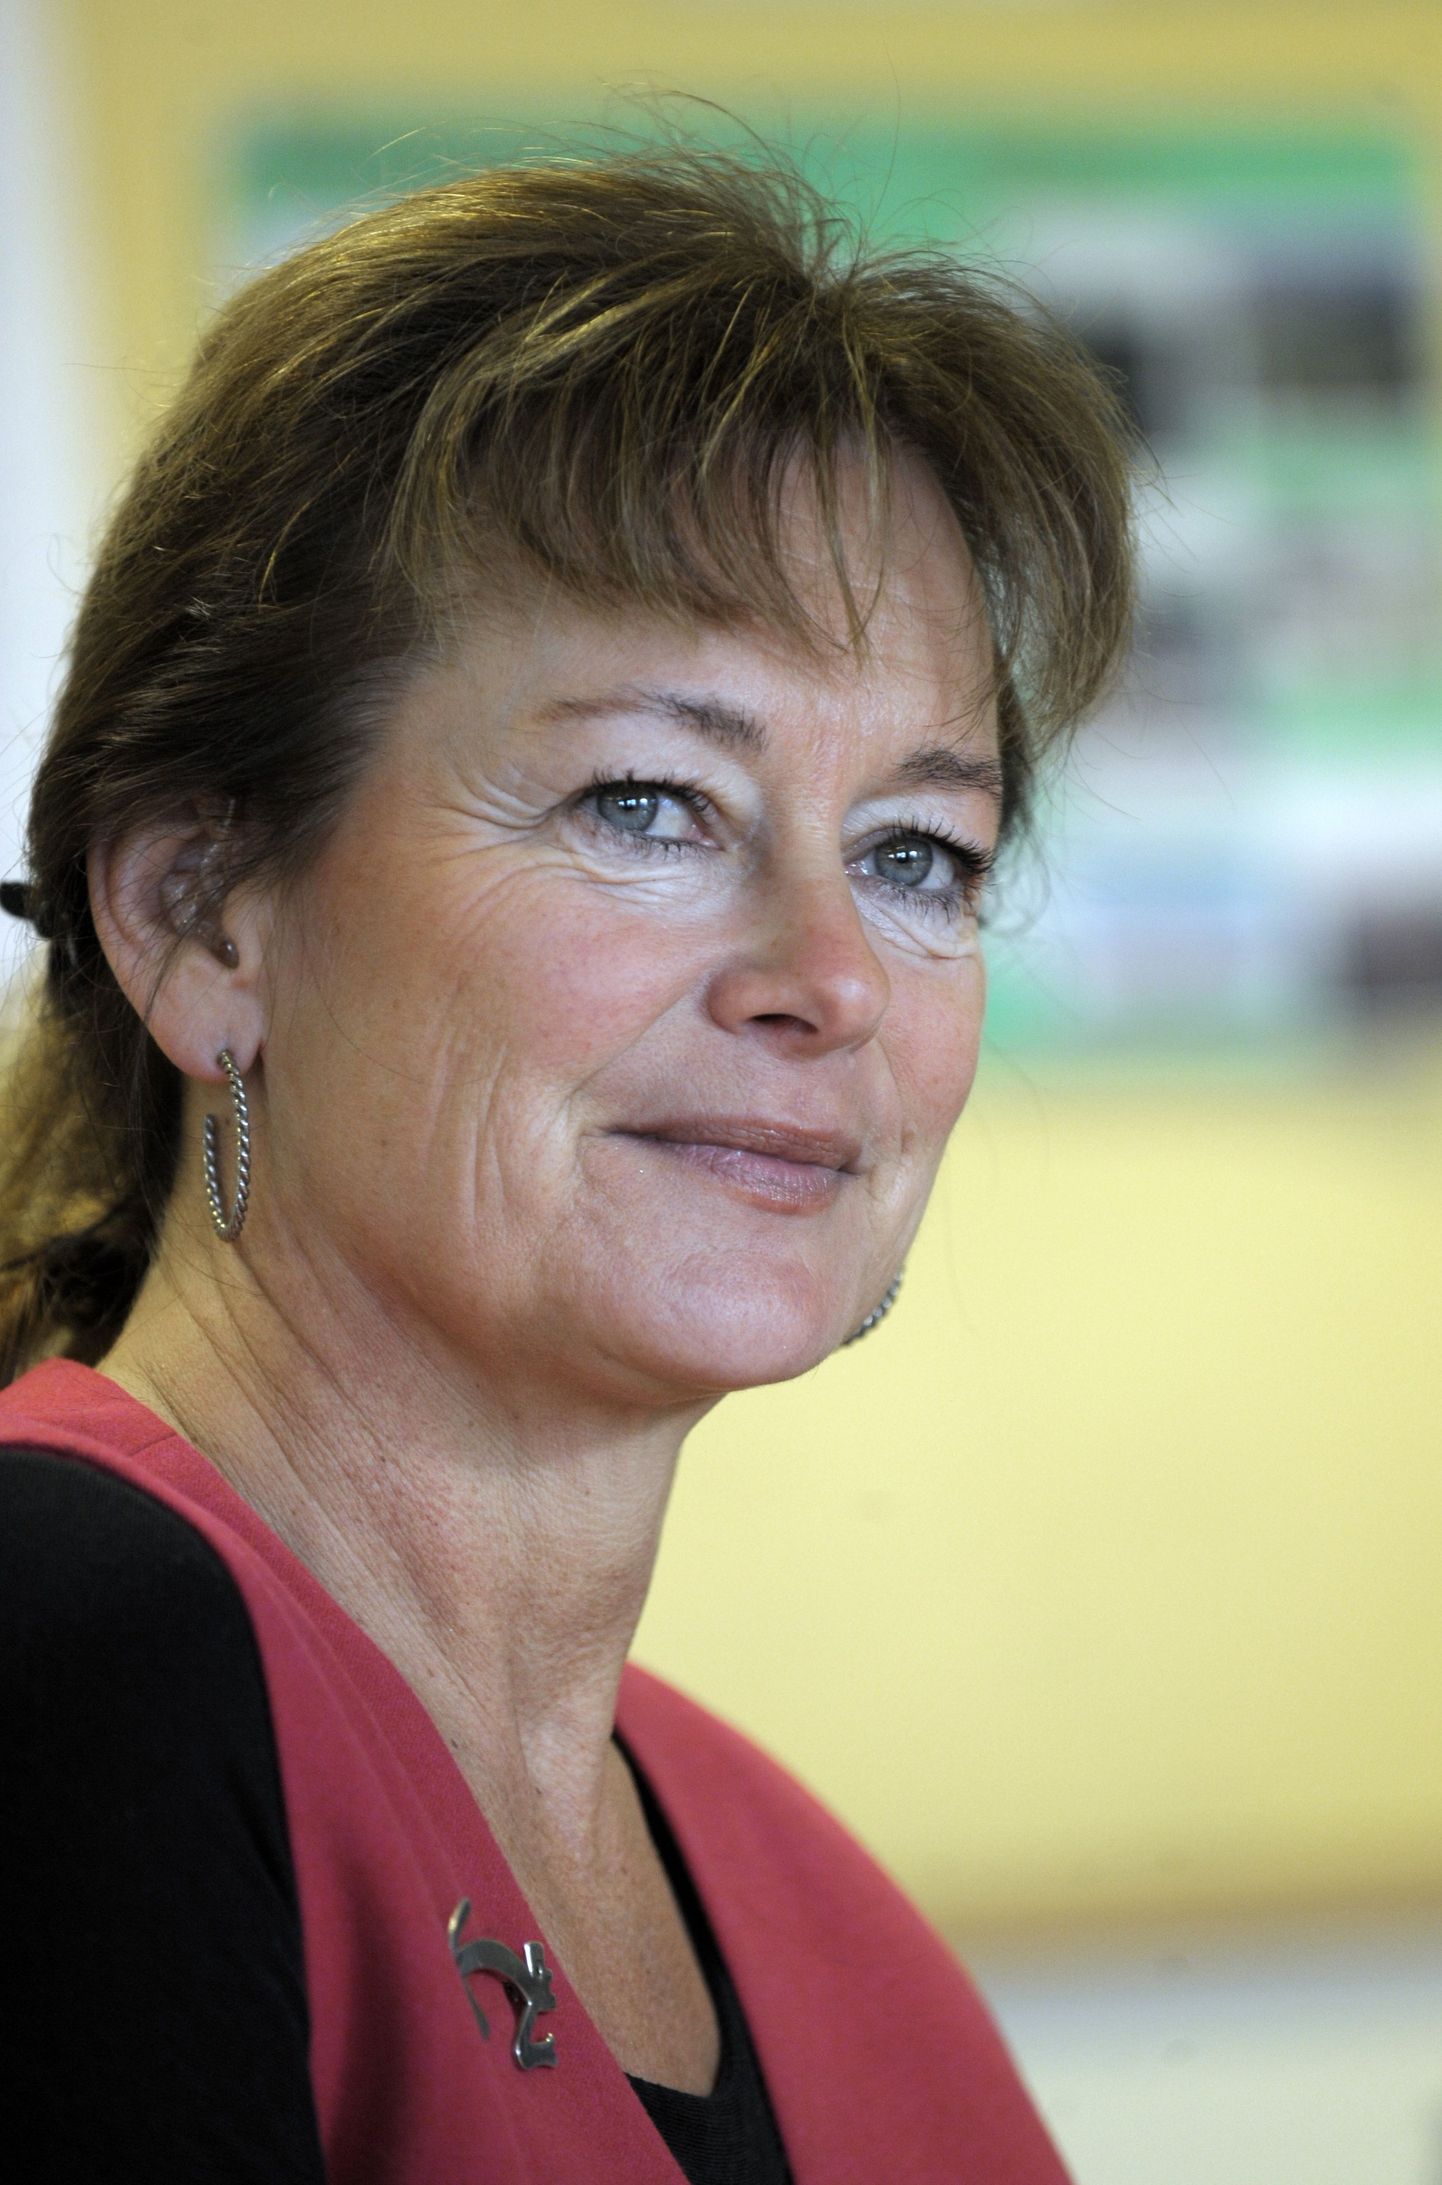 Rootsi kultuuriminister Lena Adelsohn Liljeroth